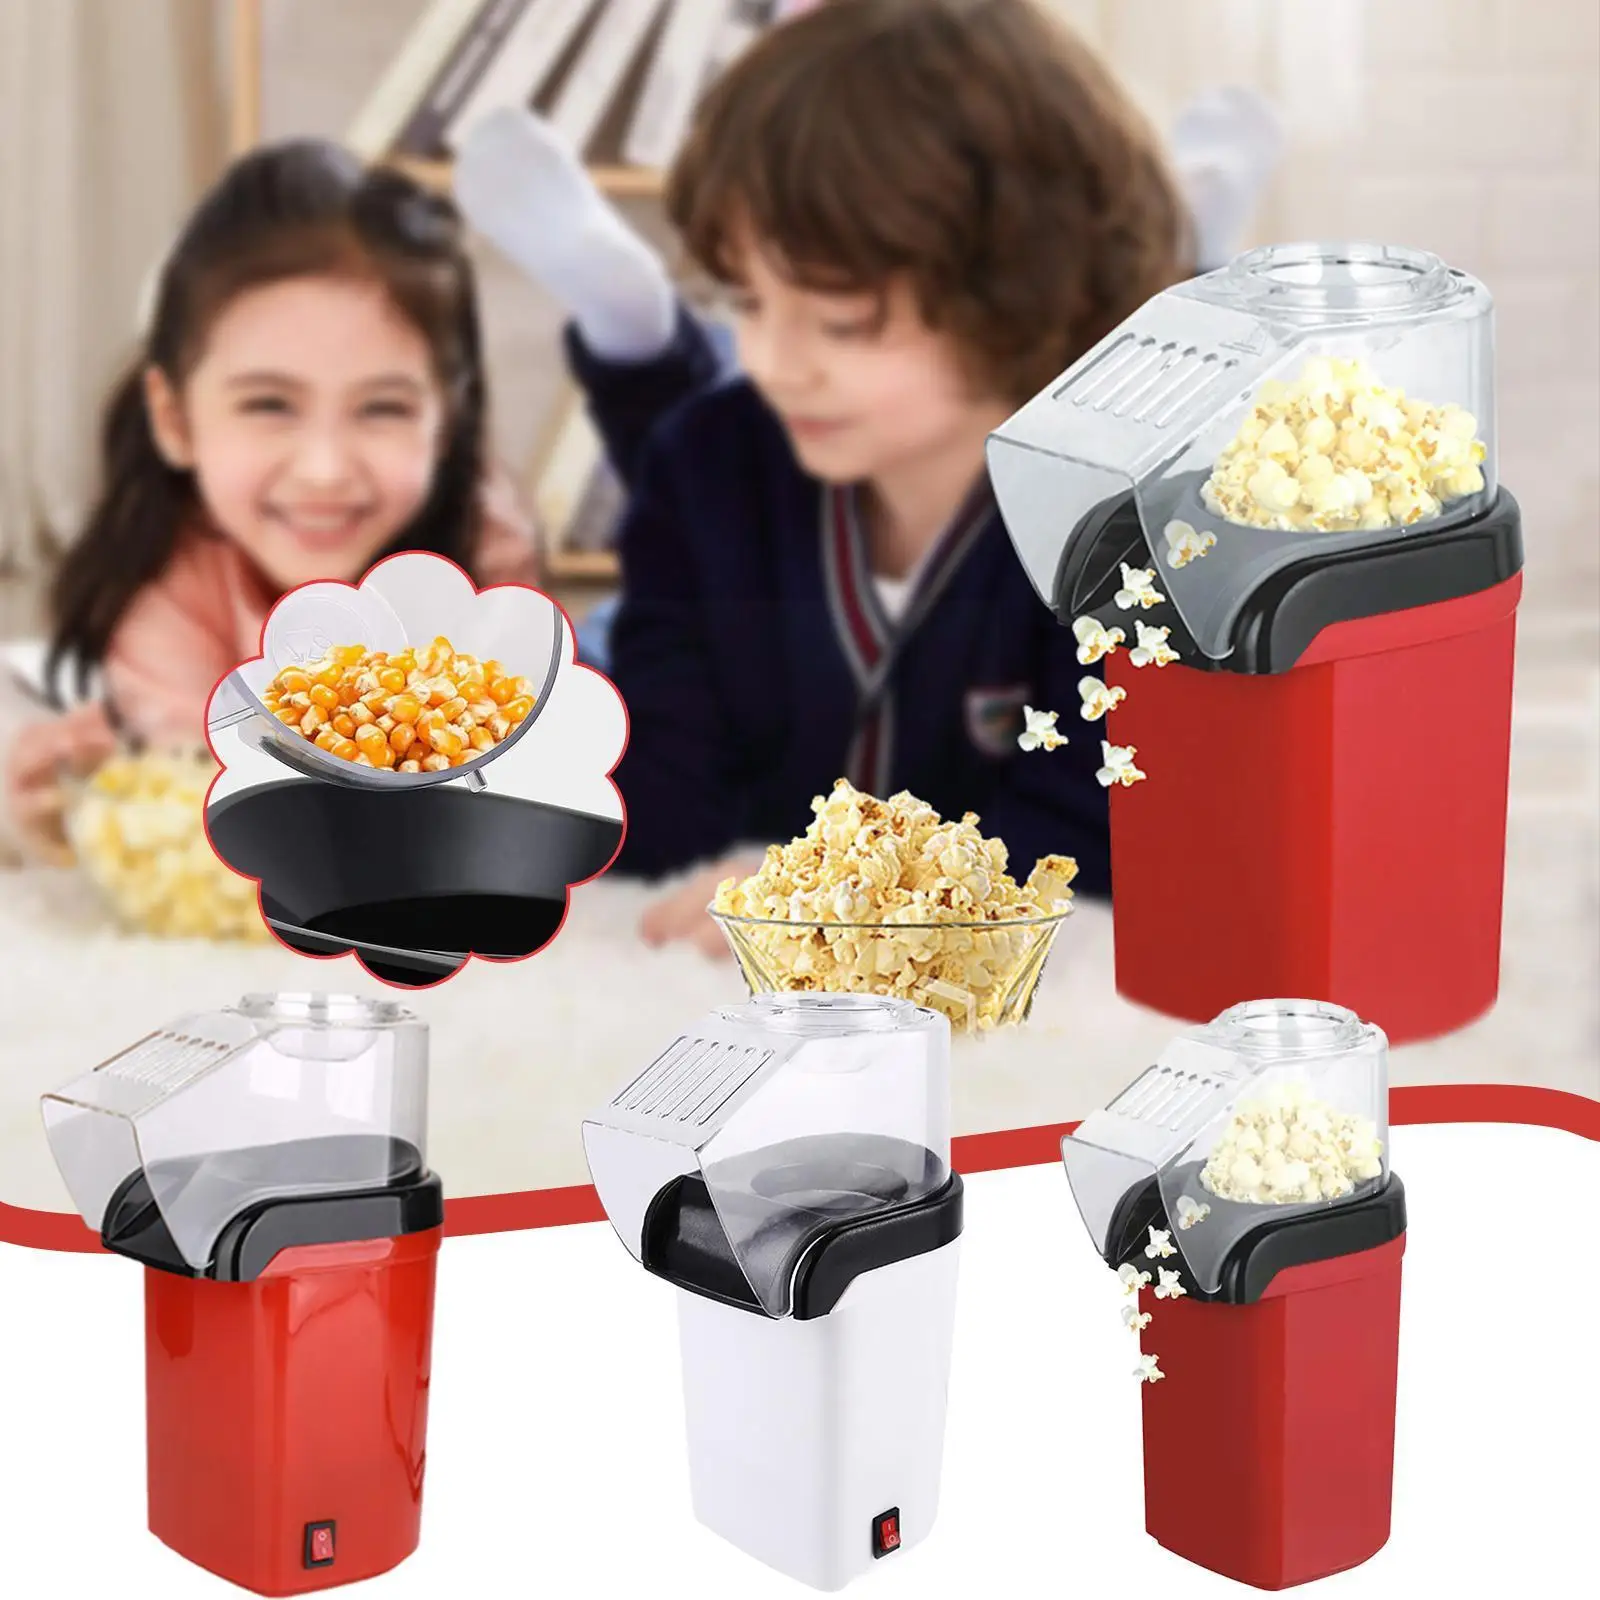 

New Hot Air Popcorn Mini Household Electric Popcorn Machine 110v Kitchen Fast No Machine Gadgets Maker 230v Movie Snack Oil K3i0